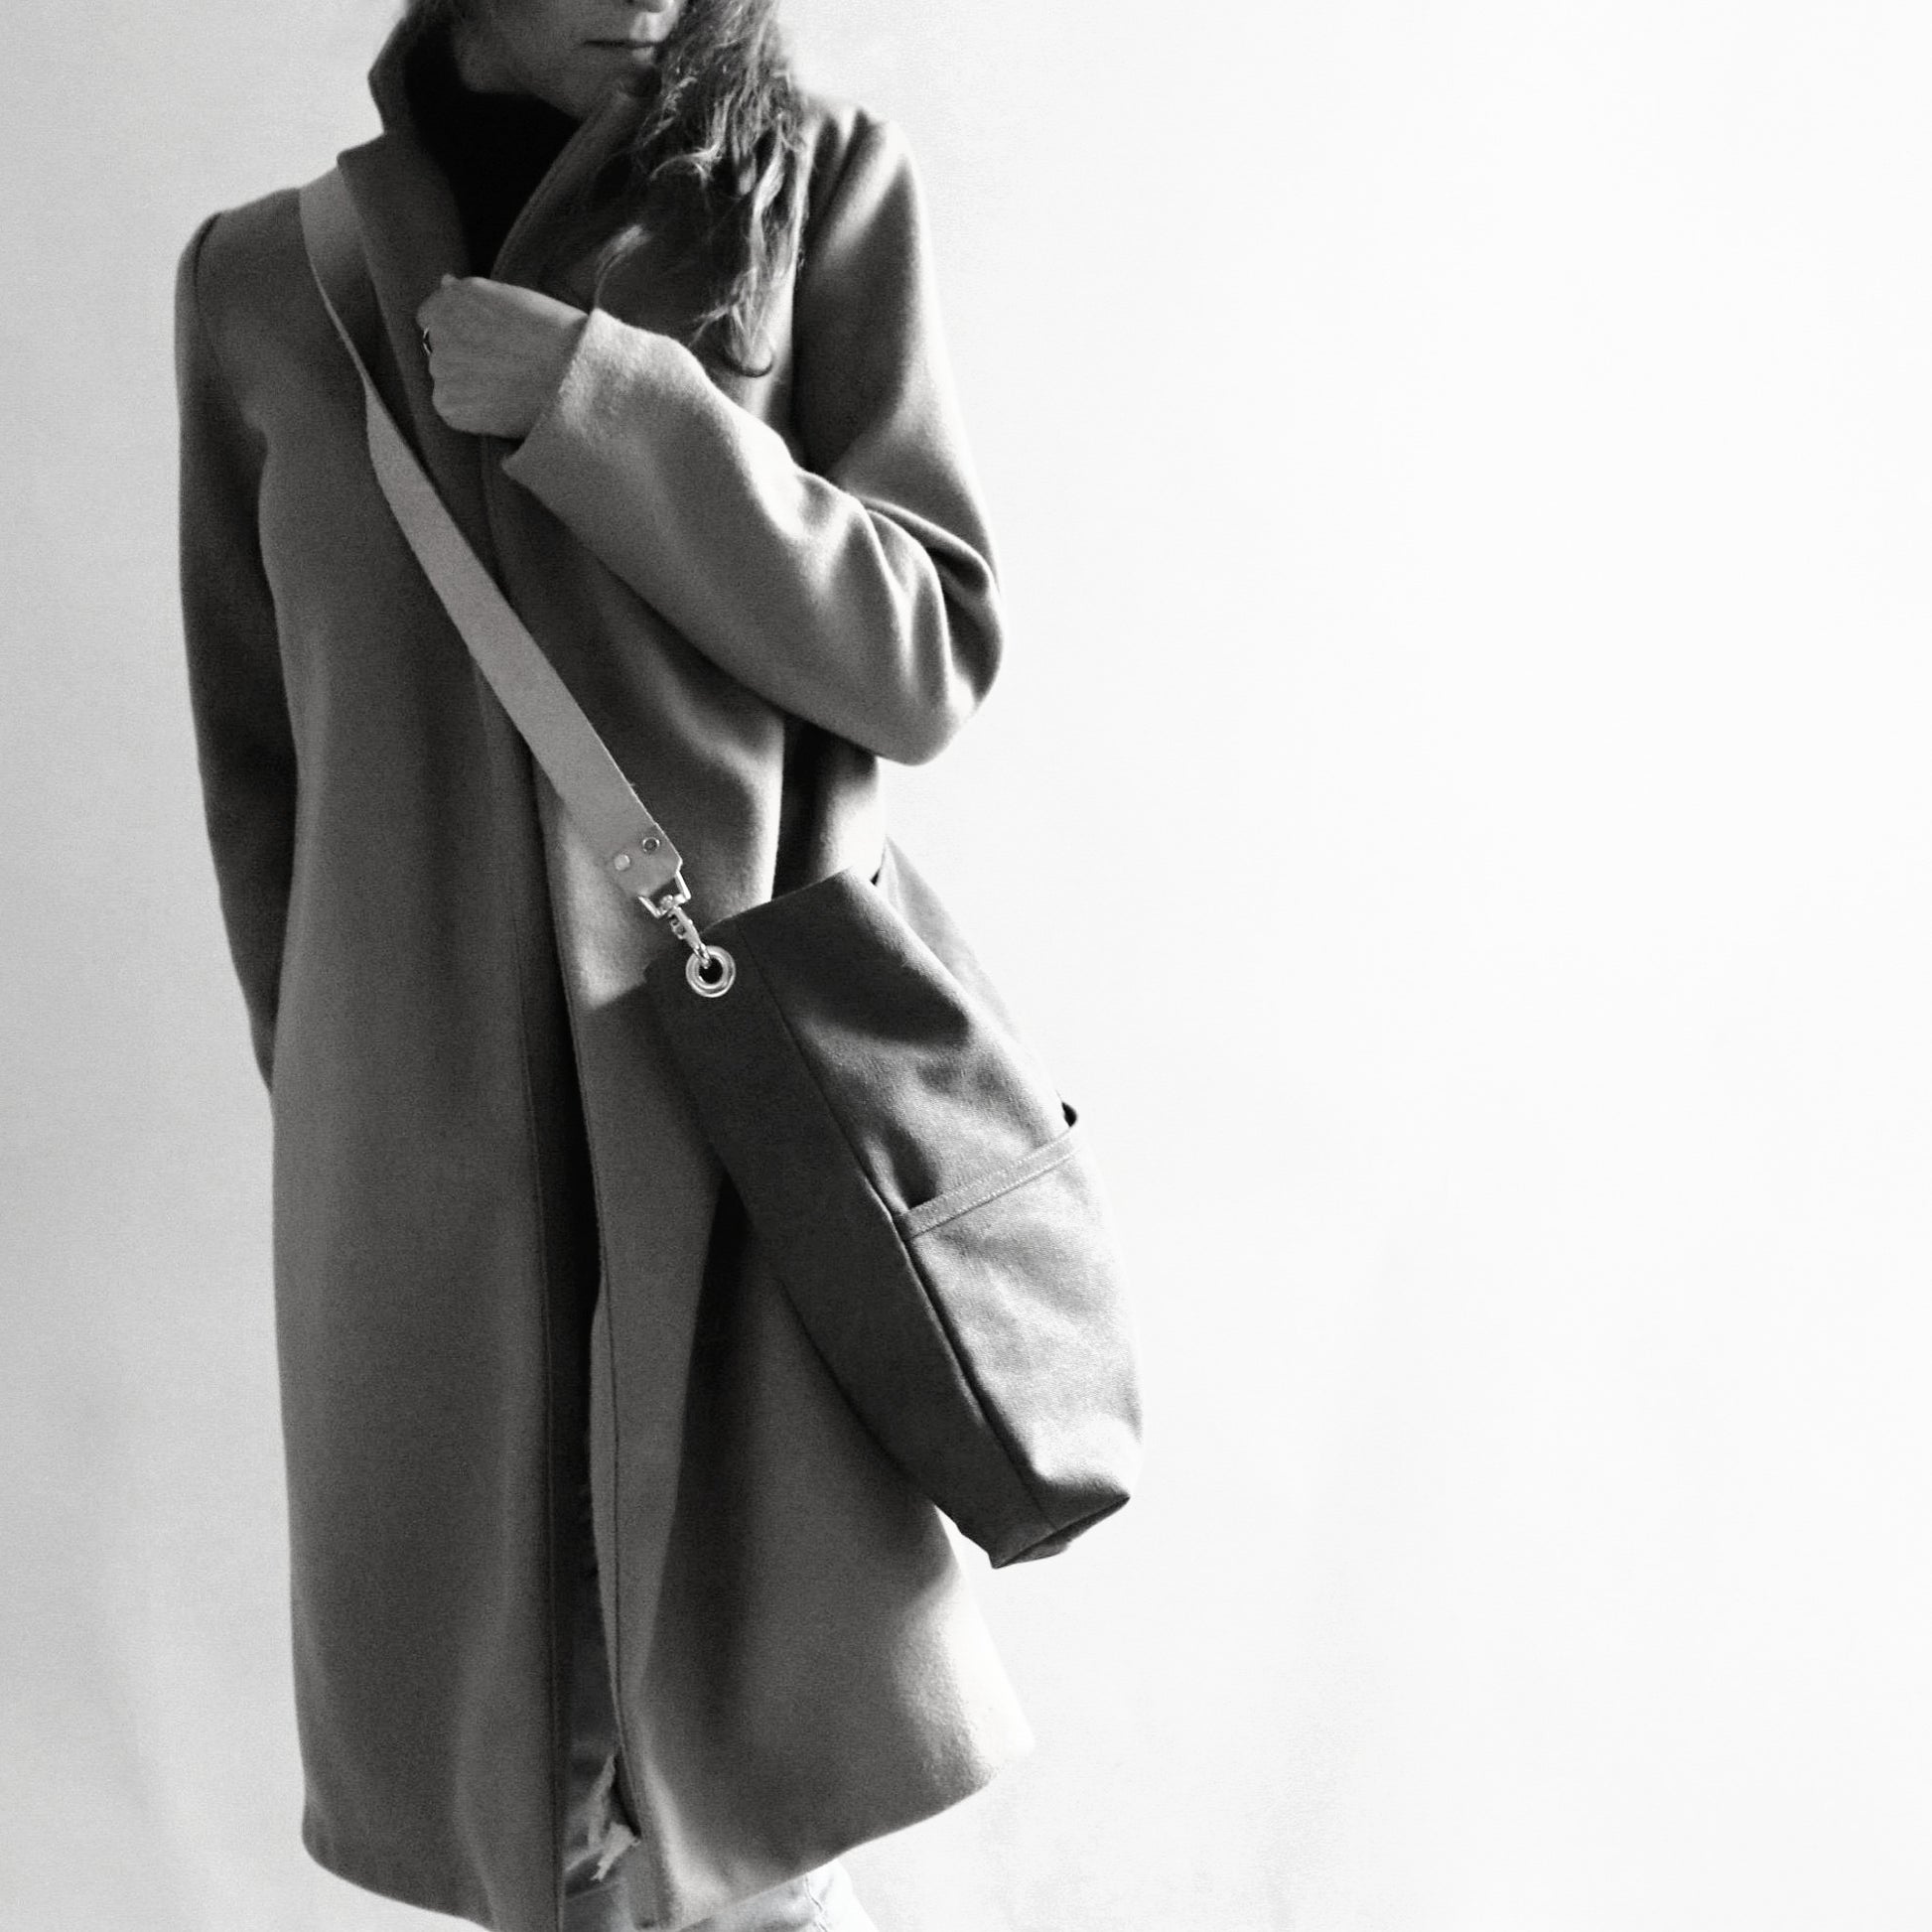 Model in long coat holding oversized hobo bag crossbody style